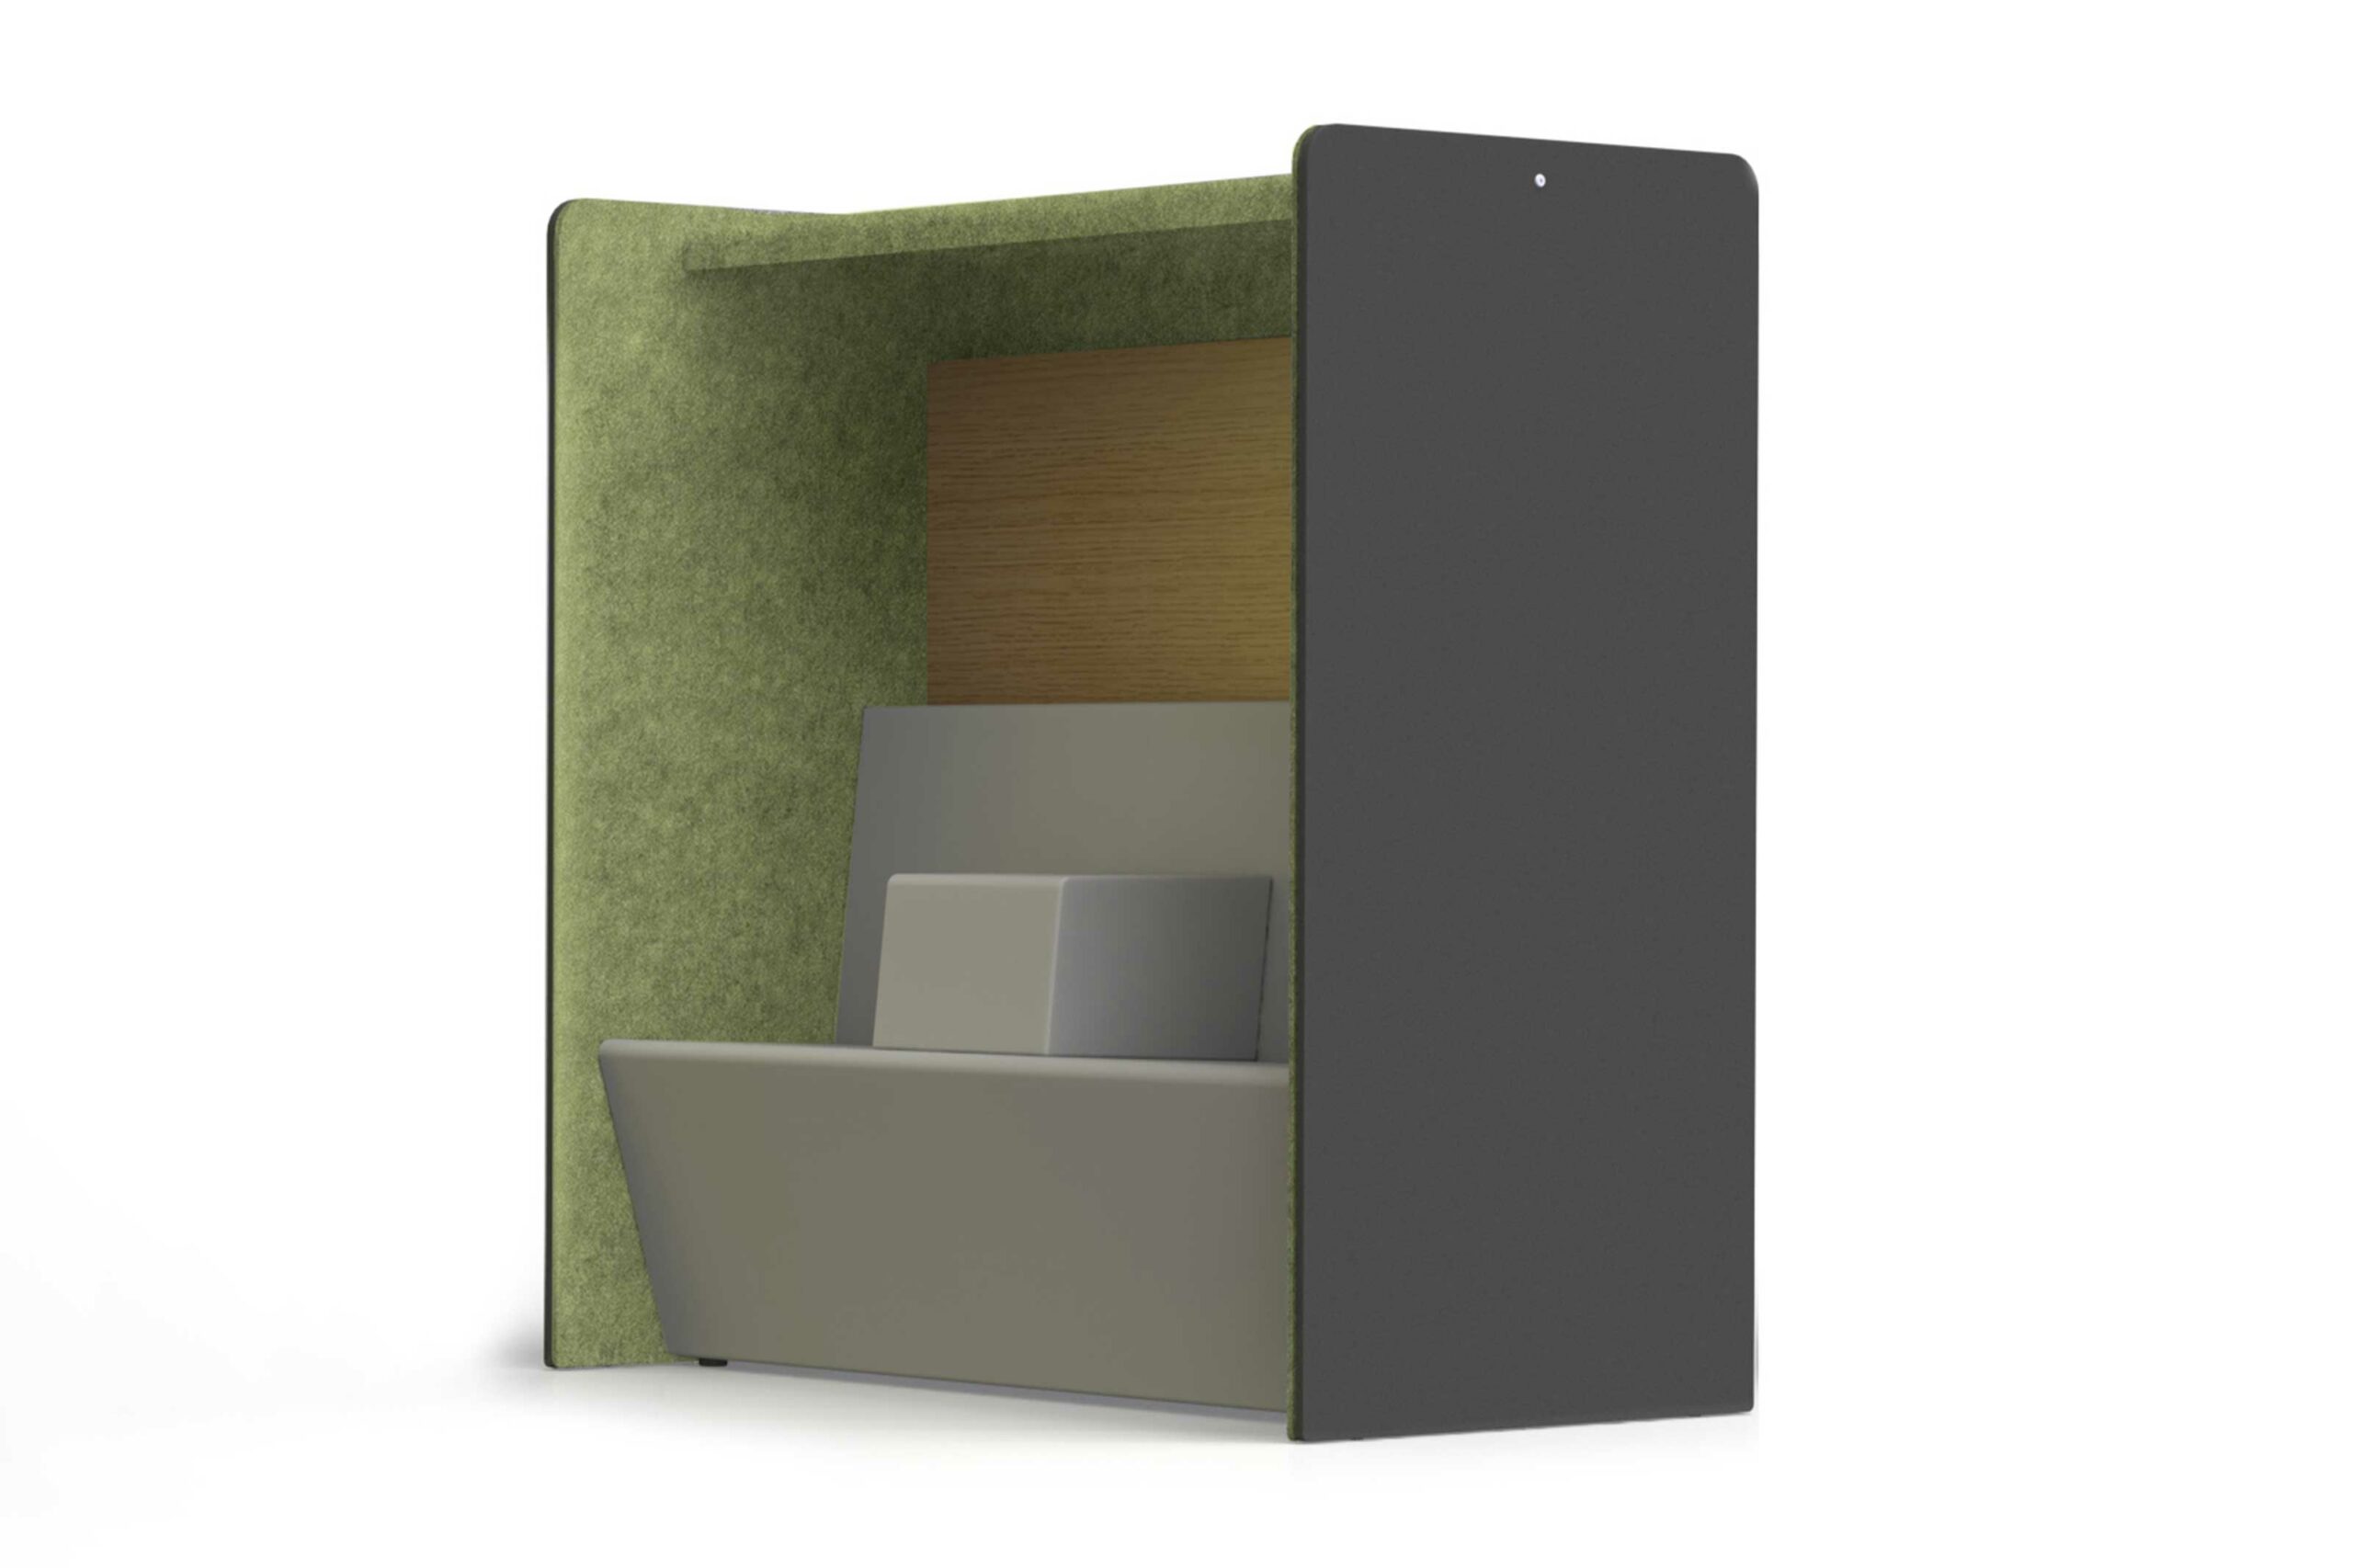 Bild zeigt ein Modul zur Raumgliederung mit einem integrierten Sofa als Sitznische. Seitenwände und Baldachin aus Akustikvlies in Grün. Das Sofa ist hellgrau mit mittiger Armlehne. 